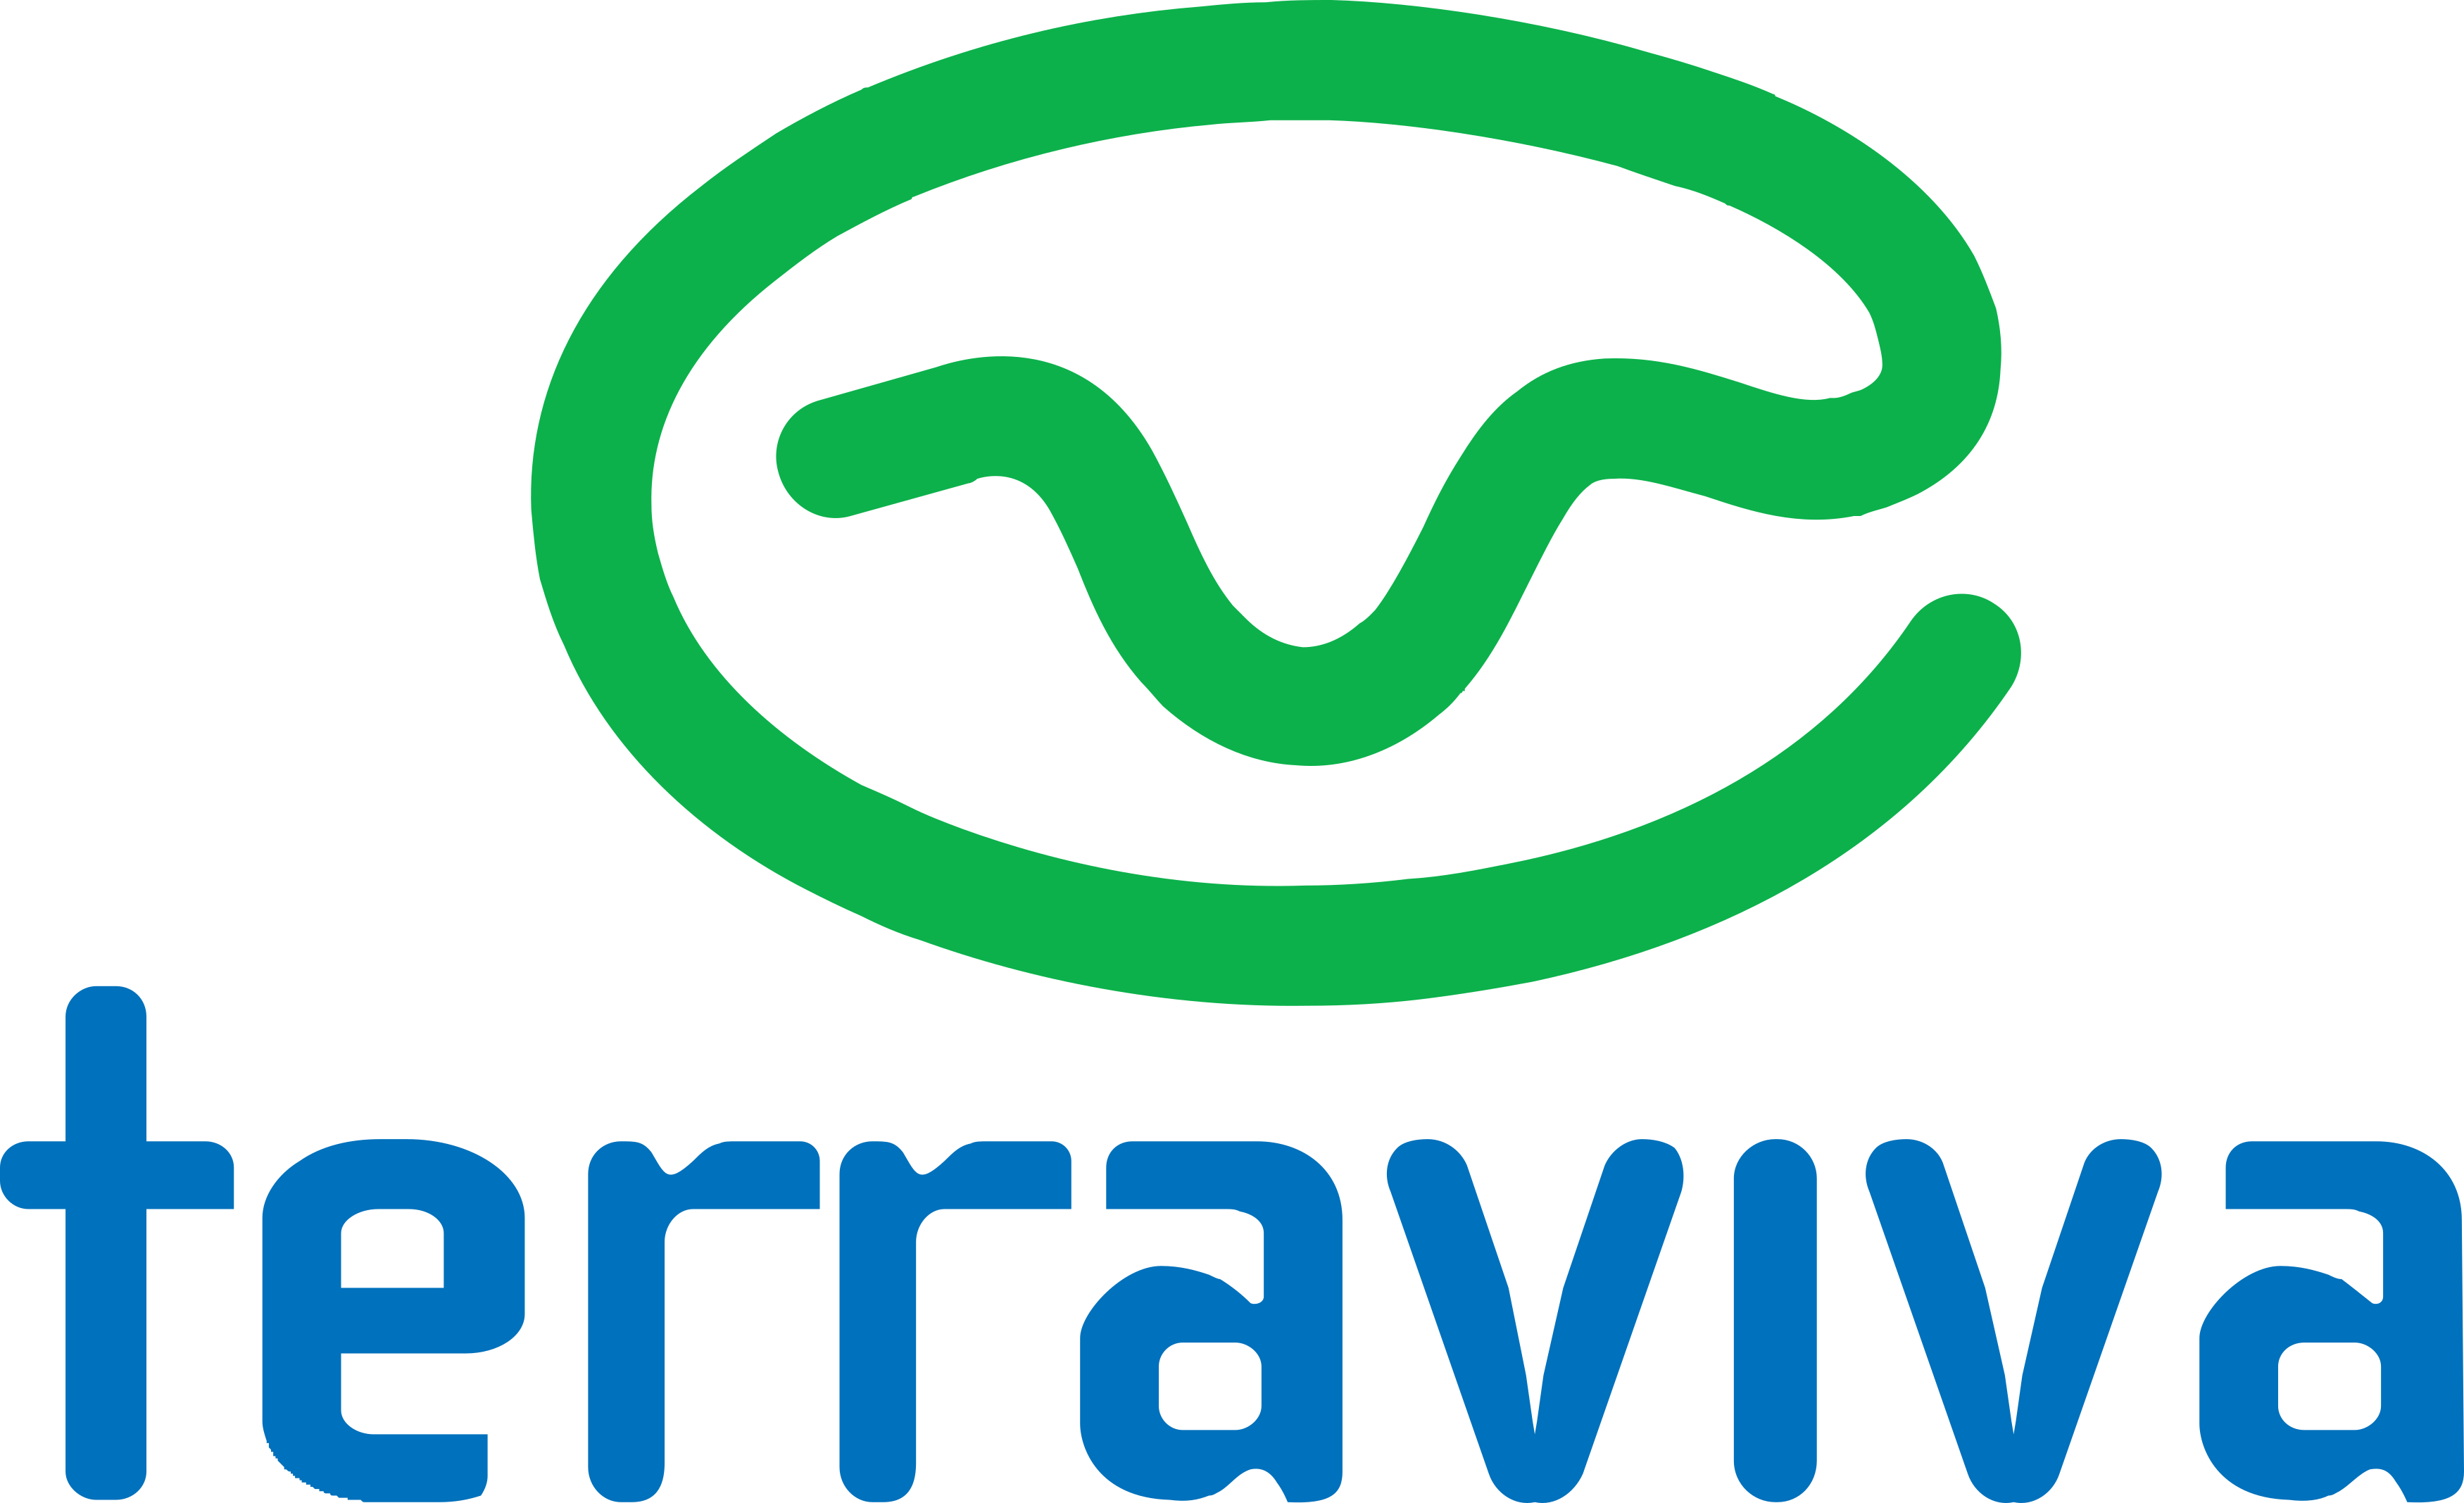 Terra Viva Logo.